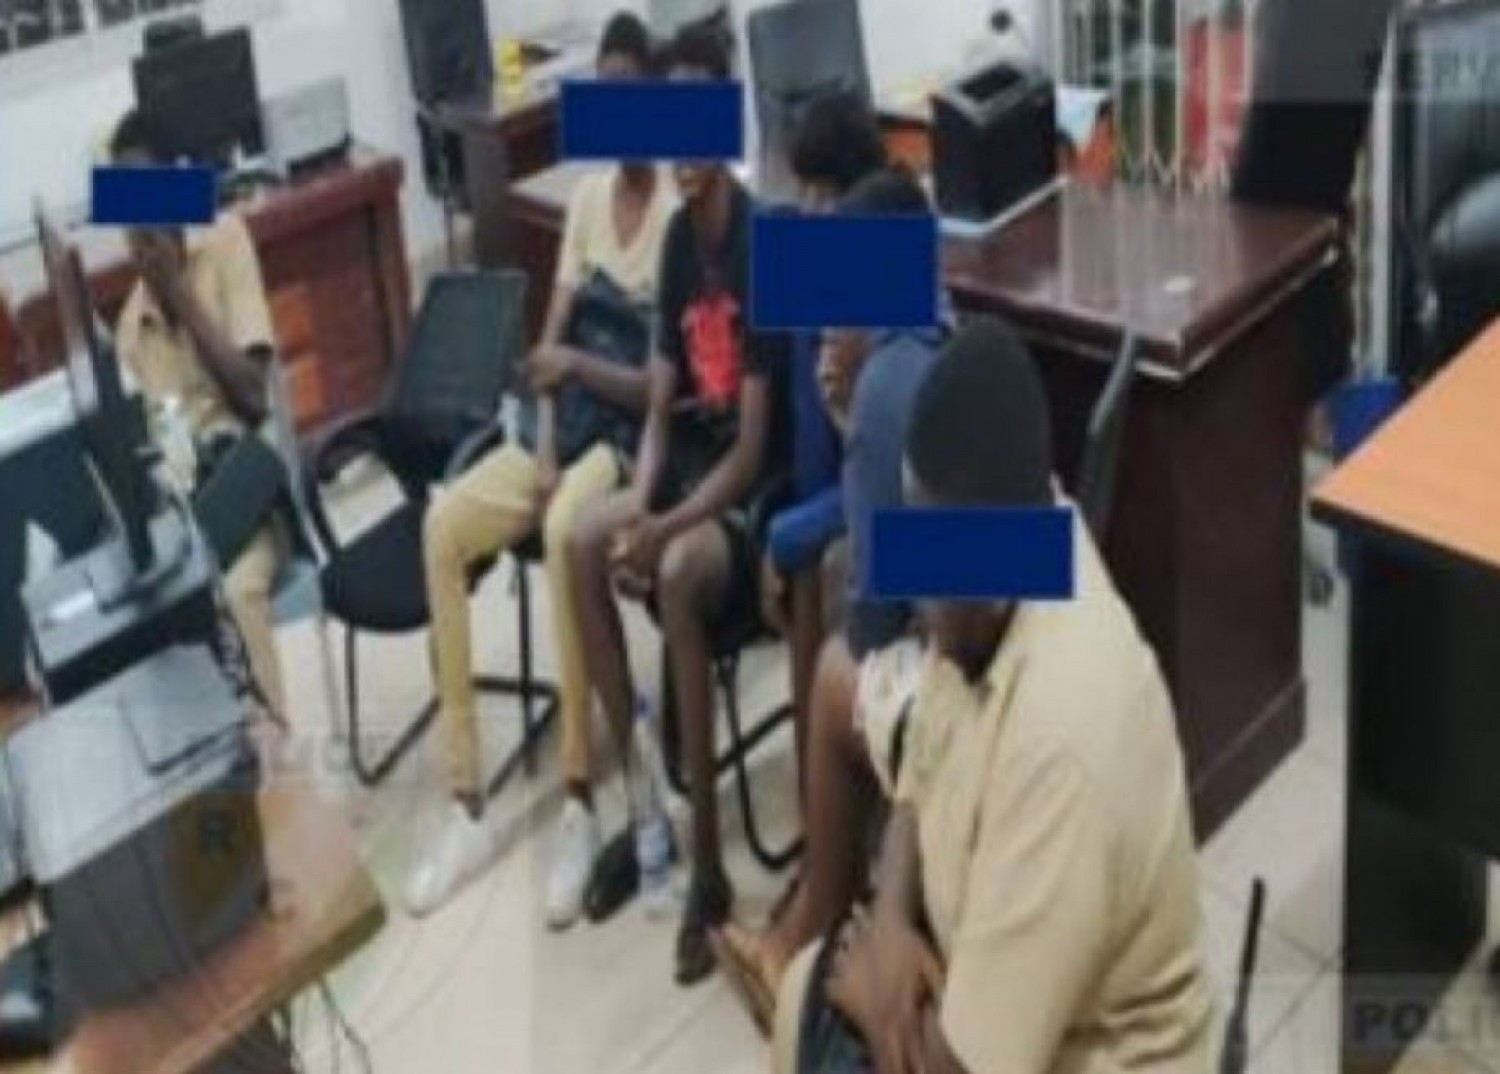 Côte d'Ivoire : Des mineurs interpellés dans une résidence à Cocody-Angré, la police veut situer les responsabilités